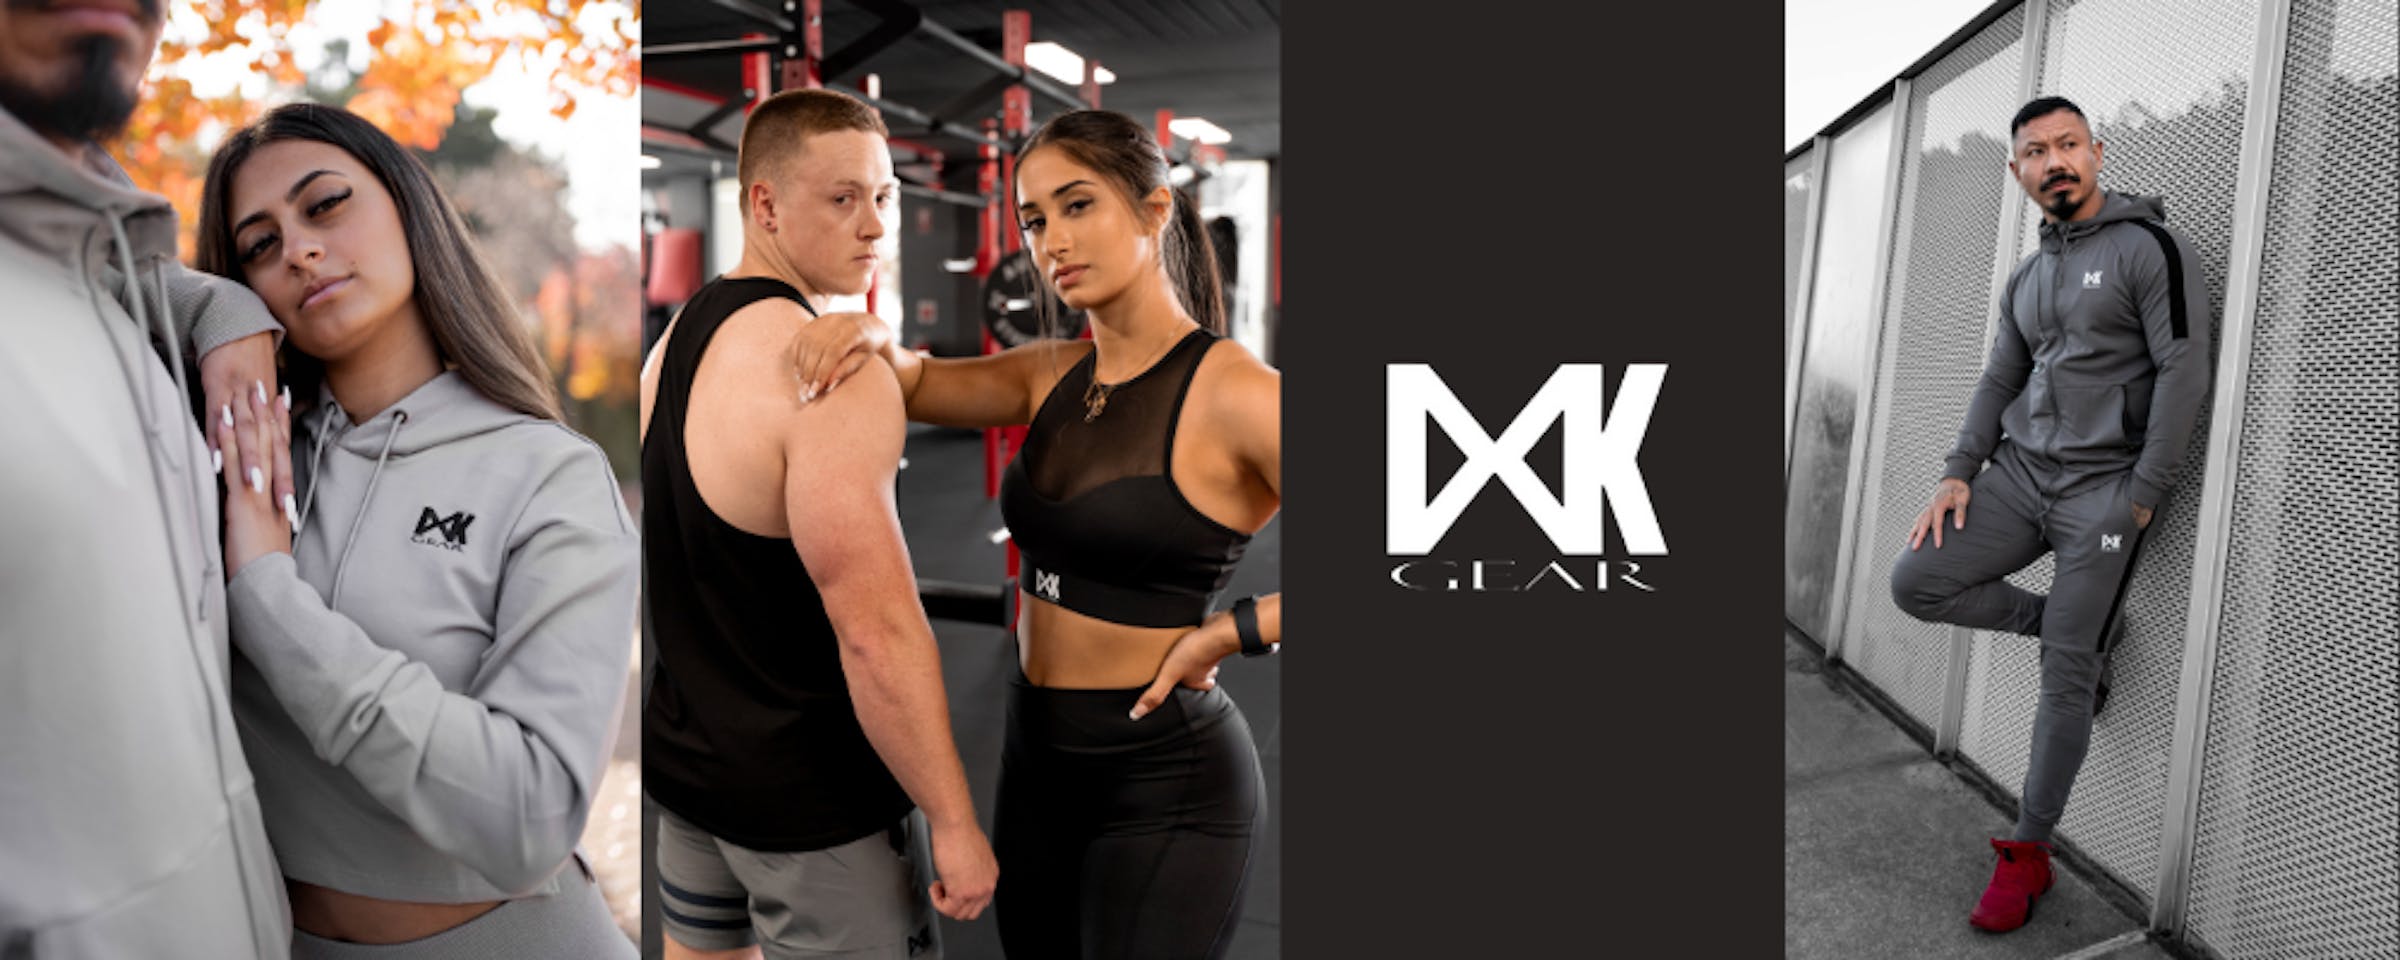 IXK X Sports Bra  Women's Sports Bra – IXK Gear